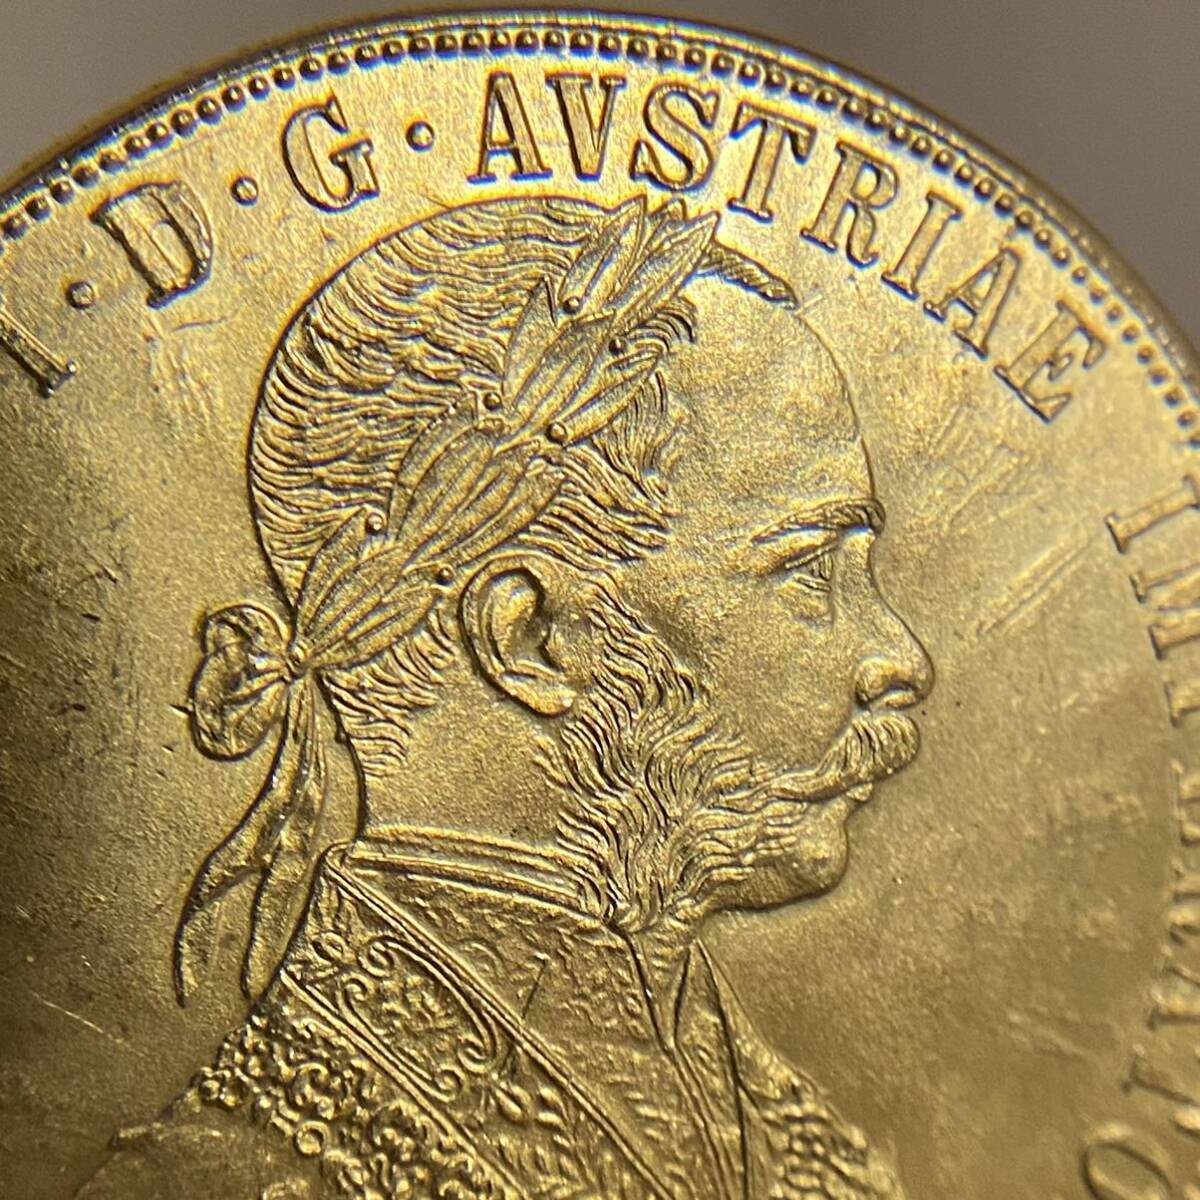 金貨 オーストリア帝国 硬貨 古銭 約14.71g フランツ・ヨーゼフ 1 世 1877年 クラウン 国章 紋章 双頭の鷲 4ダカット コイン 海外硬貨 の画像3